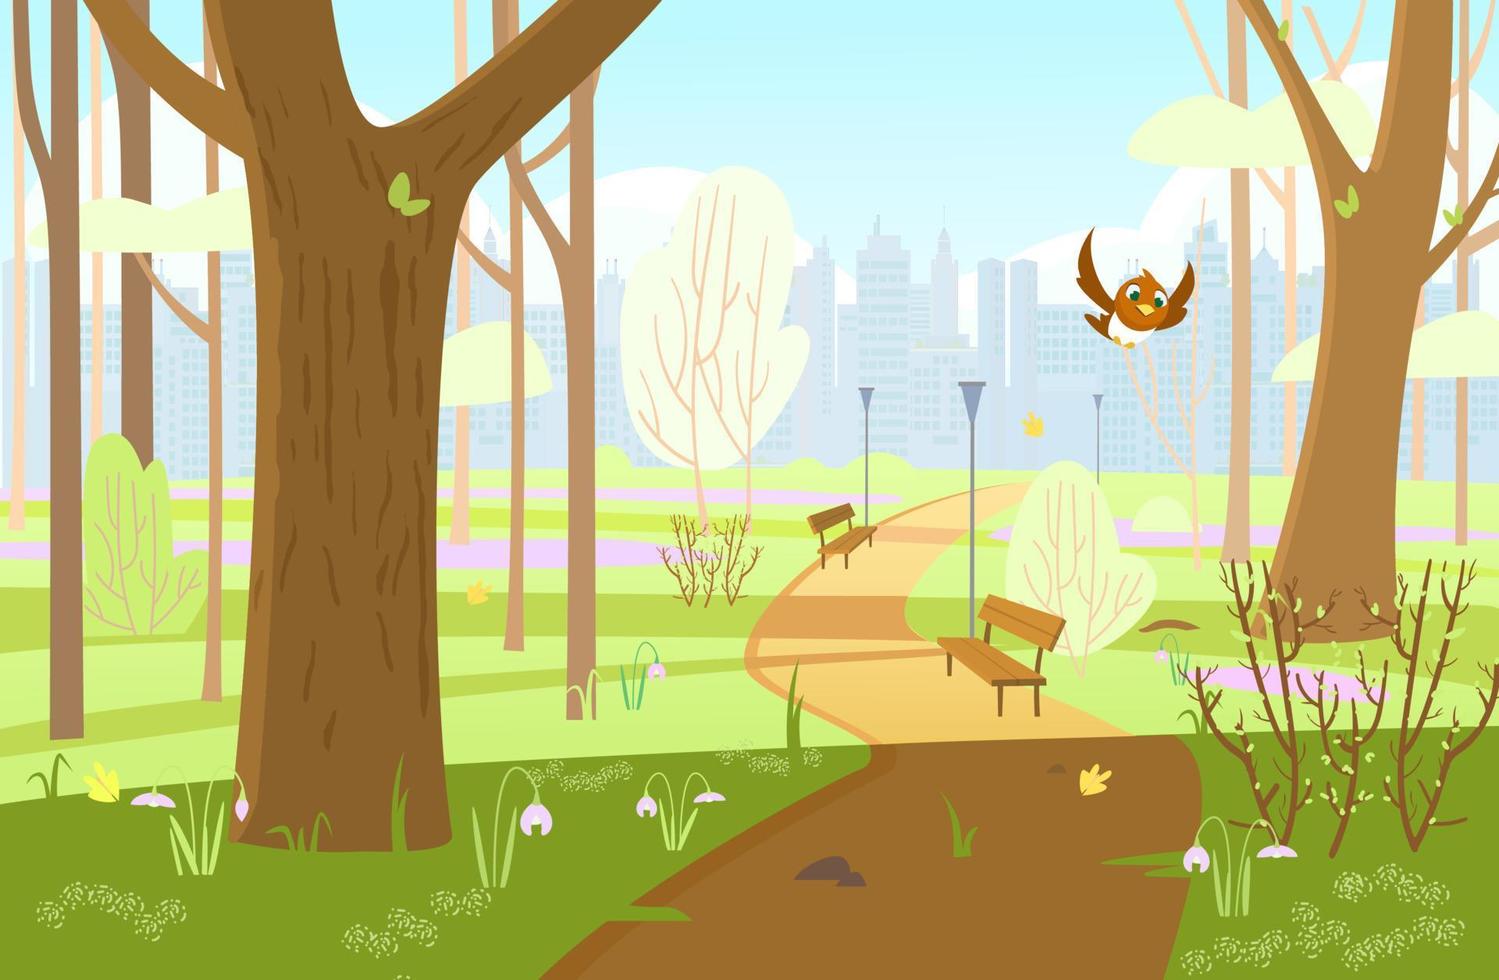 voorjaar park met bomen, struiken, eerste bloemen, voet pad, vogel vliegen, banken, stad silhouet. voorjaar achtergrond. tekenfilm vector illustratie.